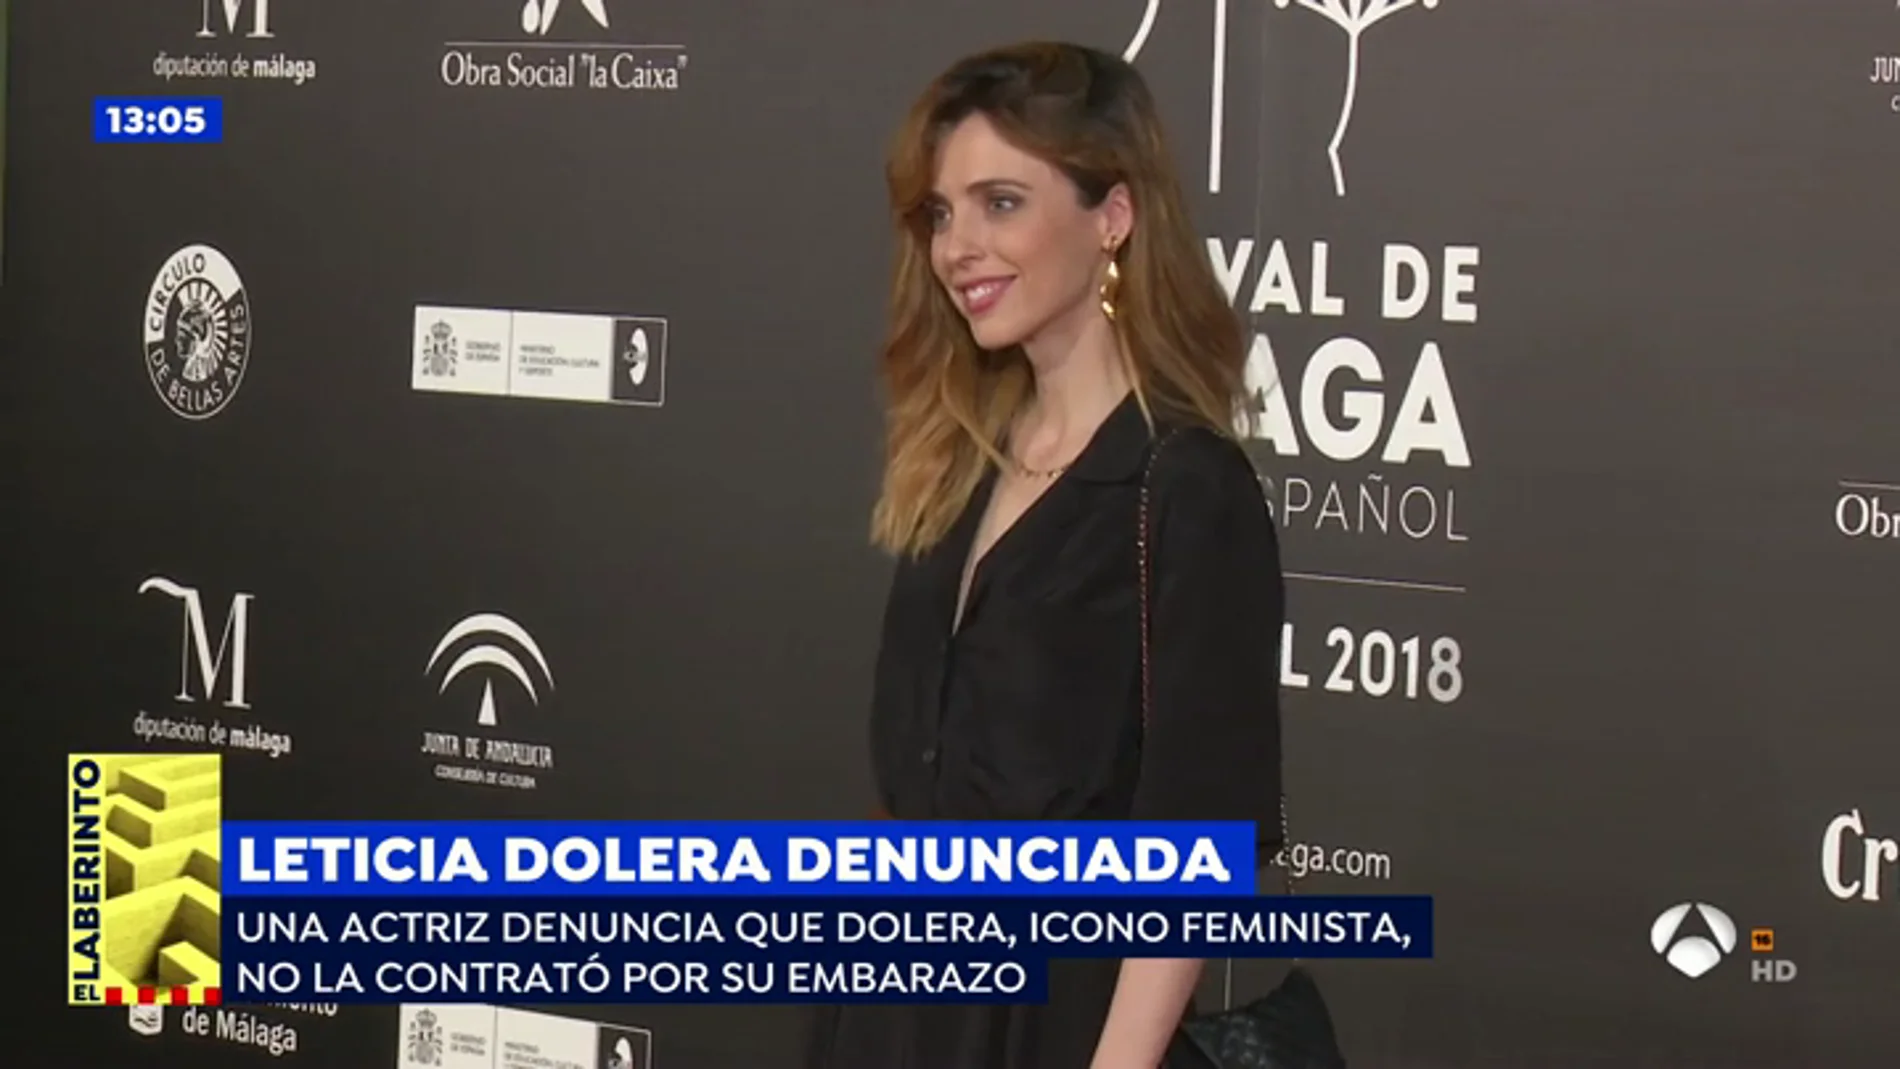 Una actriz denuncia que Leticia Dolera, icono feminista, no la contrató por su embarazo: "Era imposible contar esta historia con una embarazada de 5 meses"